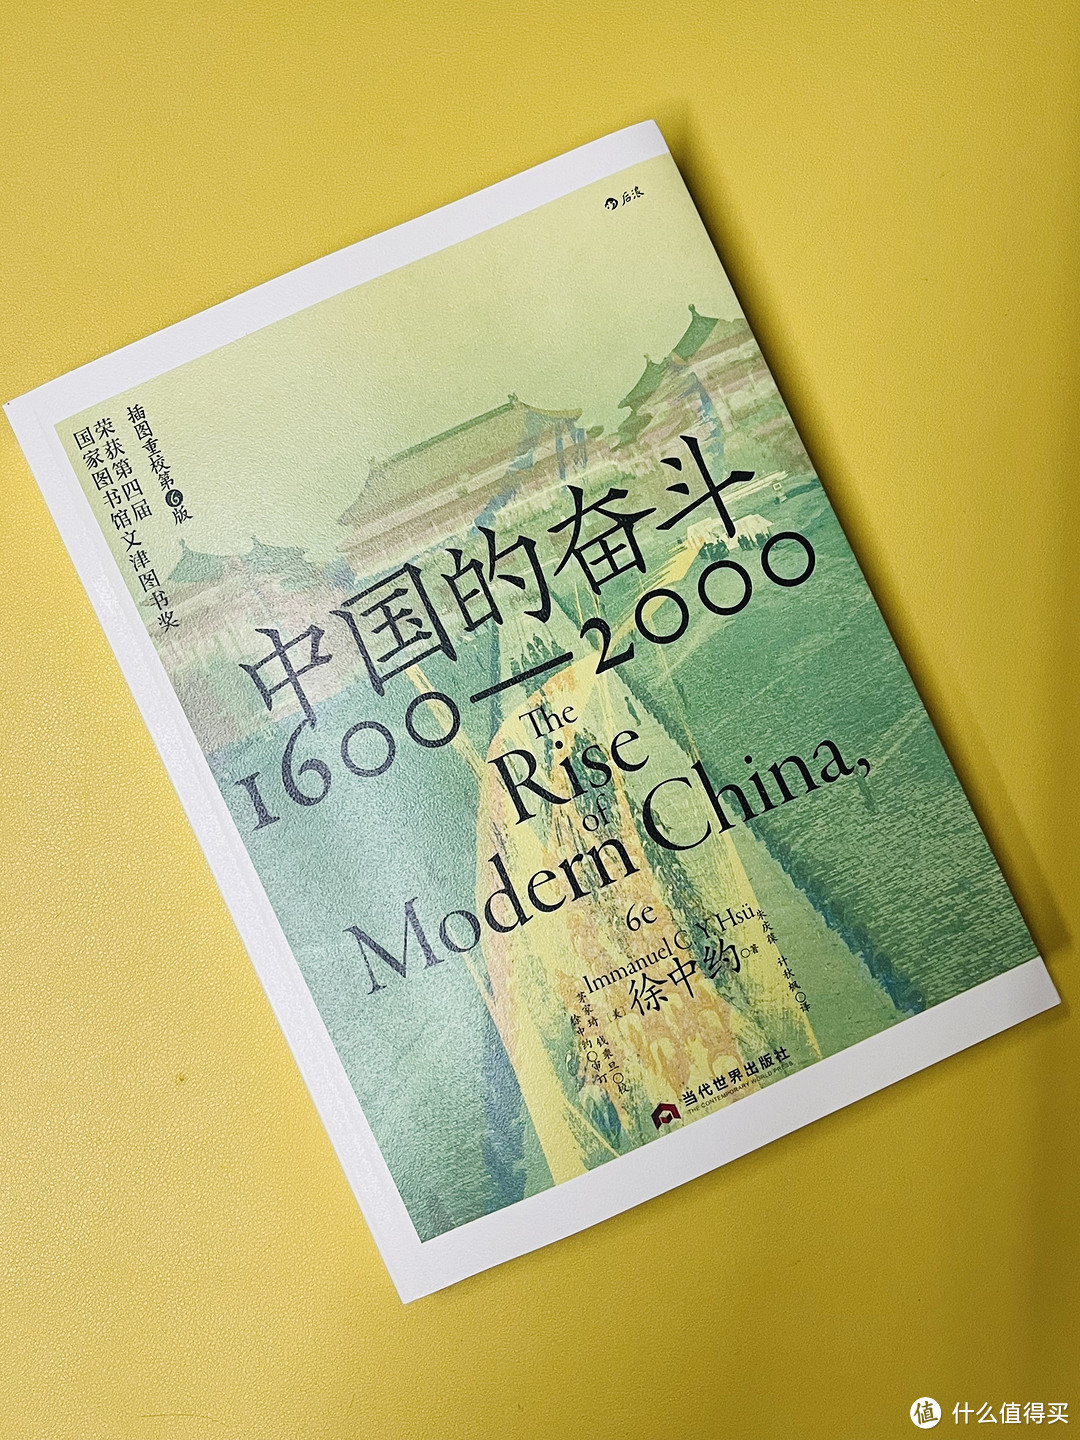 历史迷都爱看，揭秘中国400年背后的历史故事！